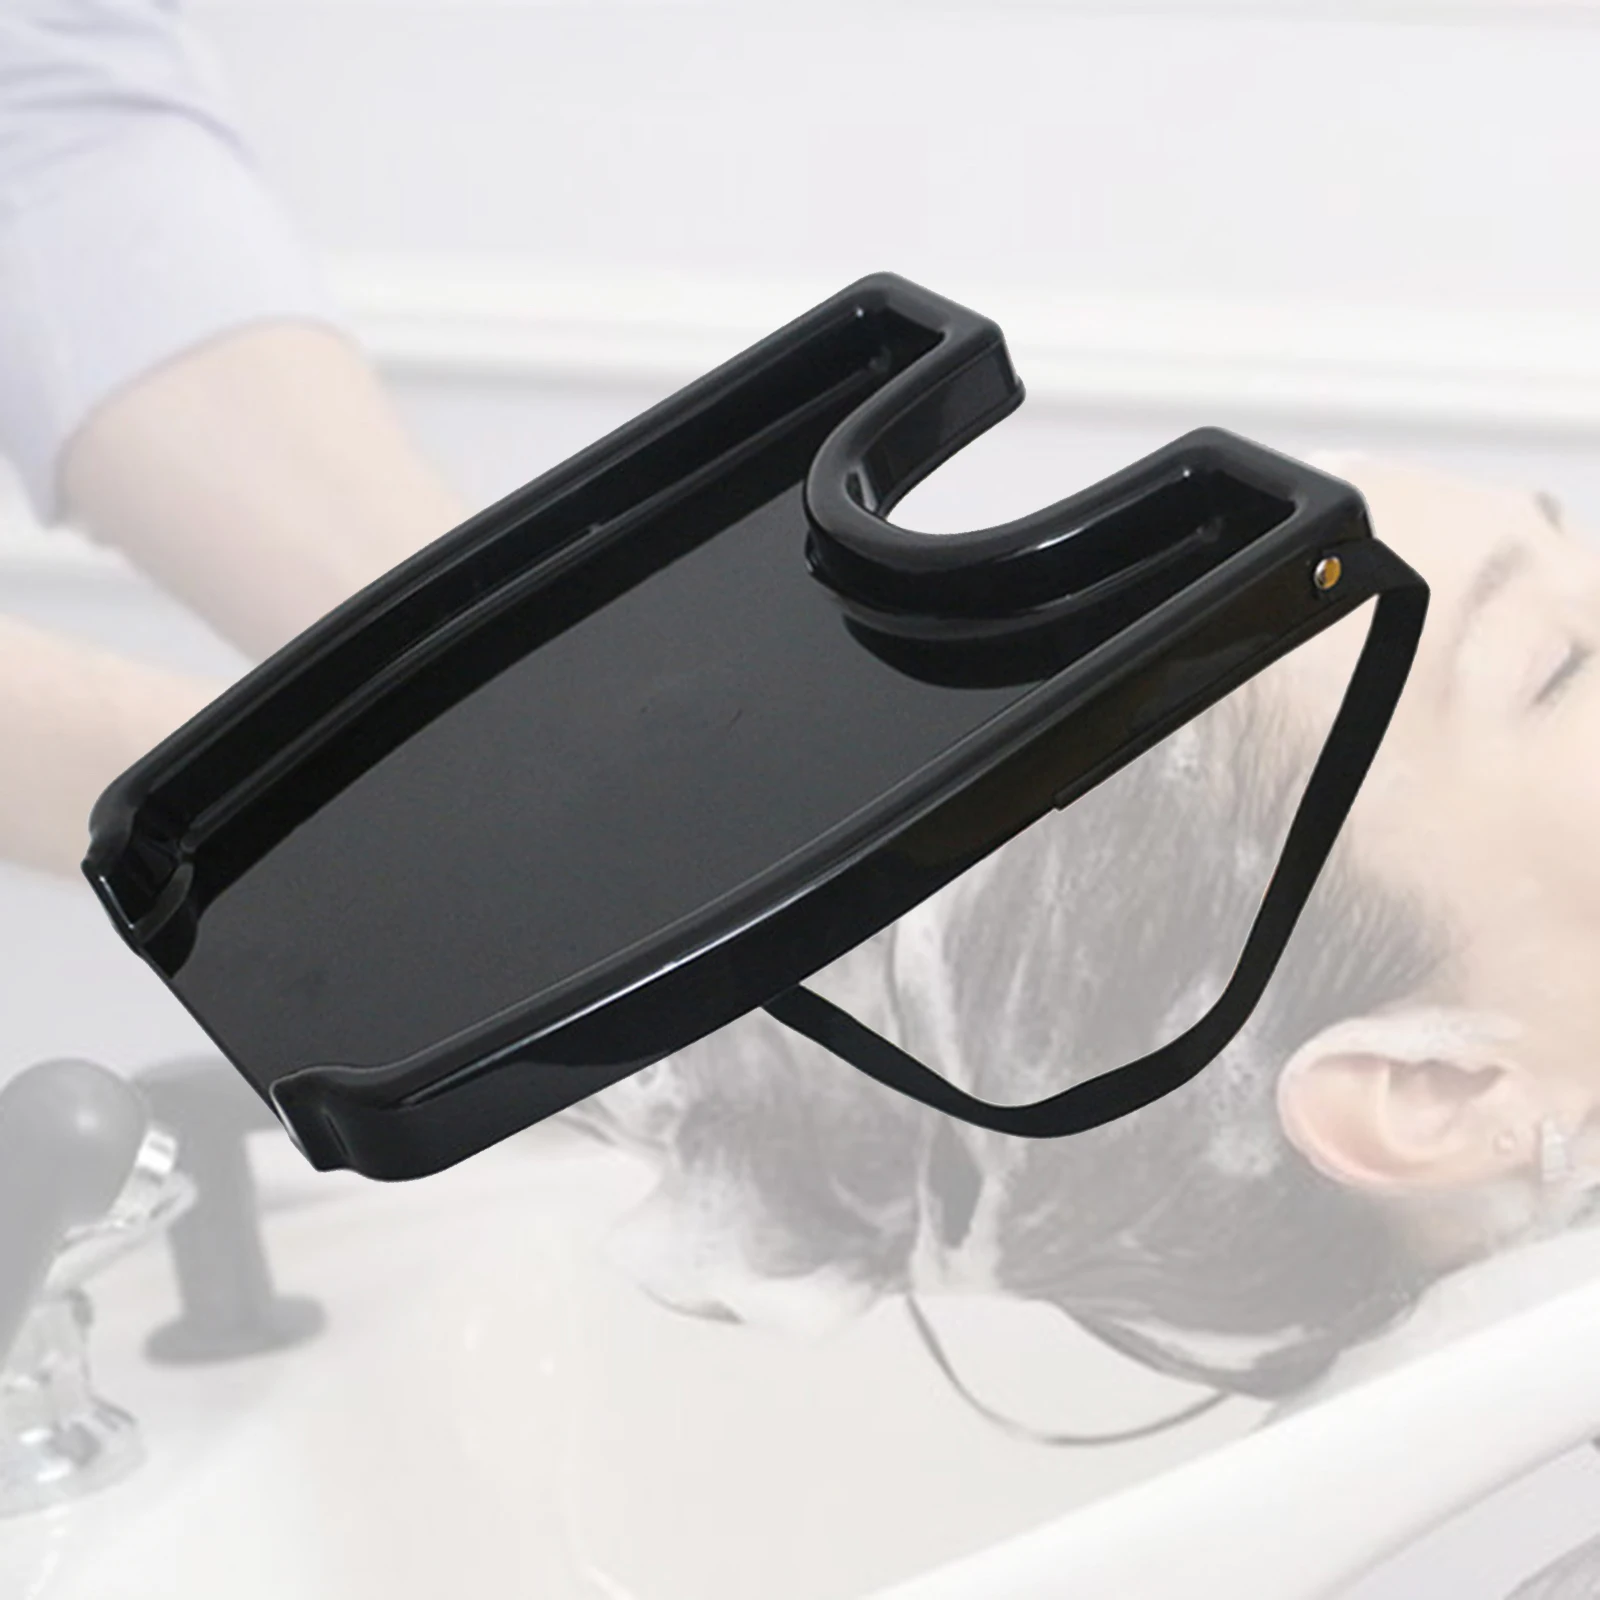 Portable Hair Shampoo Rinse Backwash Washing Tray Sink, Safety Contoured, Raised 